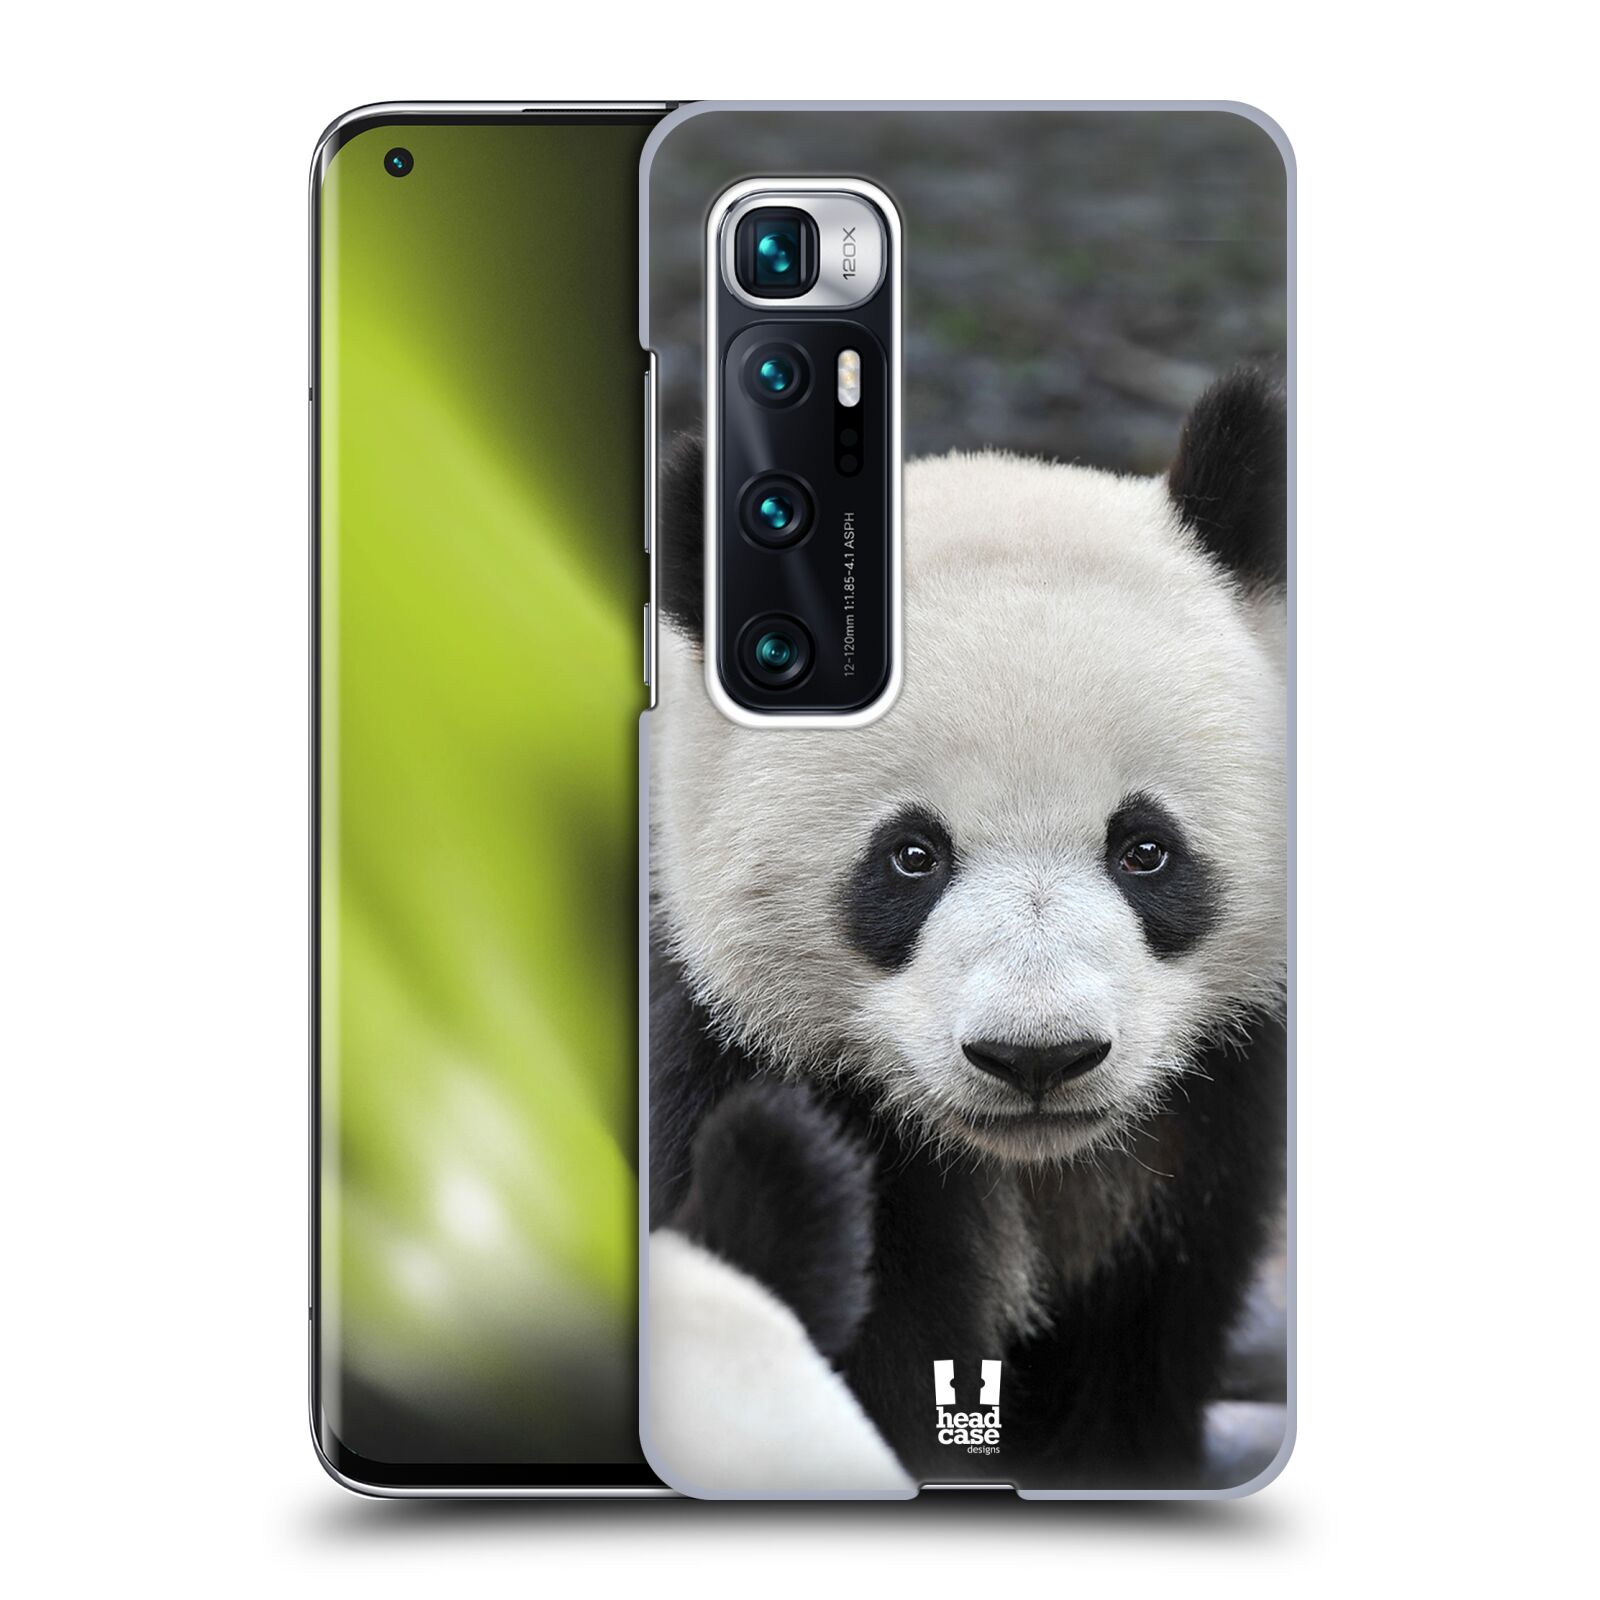 Zadní obal pro mobil Xiaomi Mi 10 Ultra / Mi 10 Ultra 5G - HEAD CASE - Svět zvířat medvěd panda